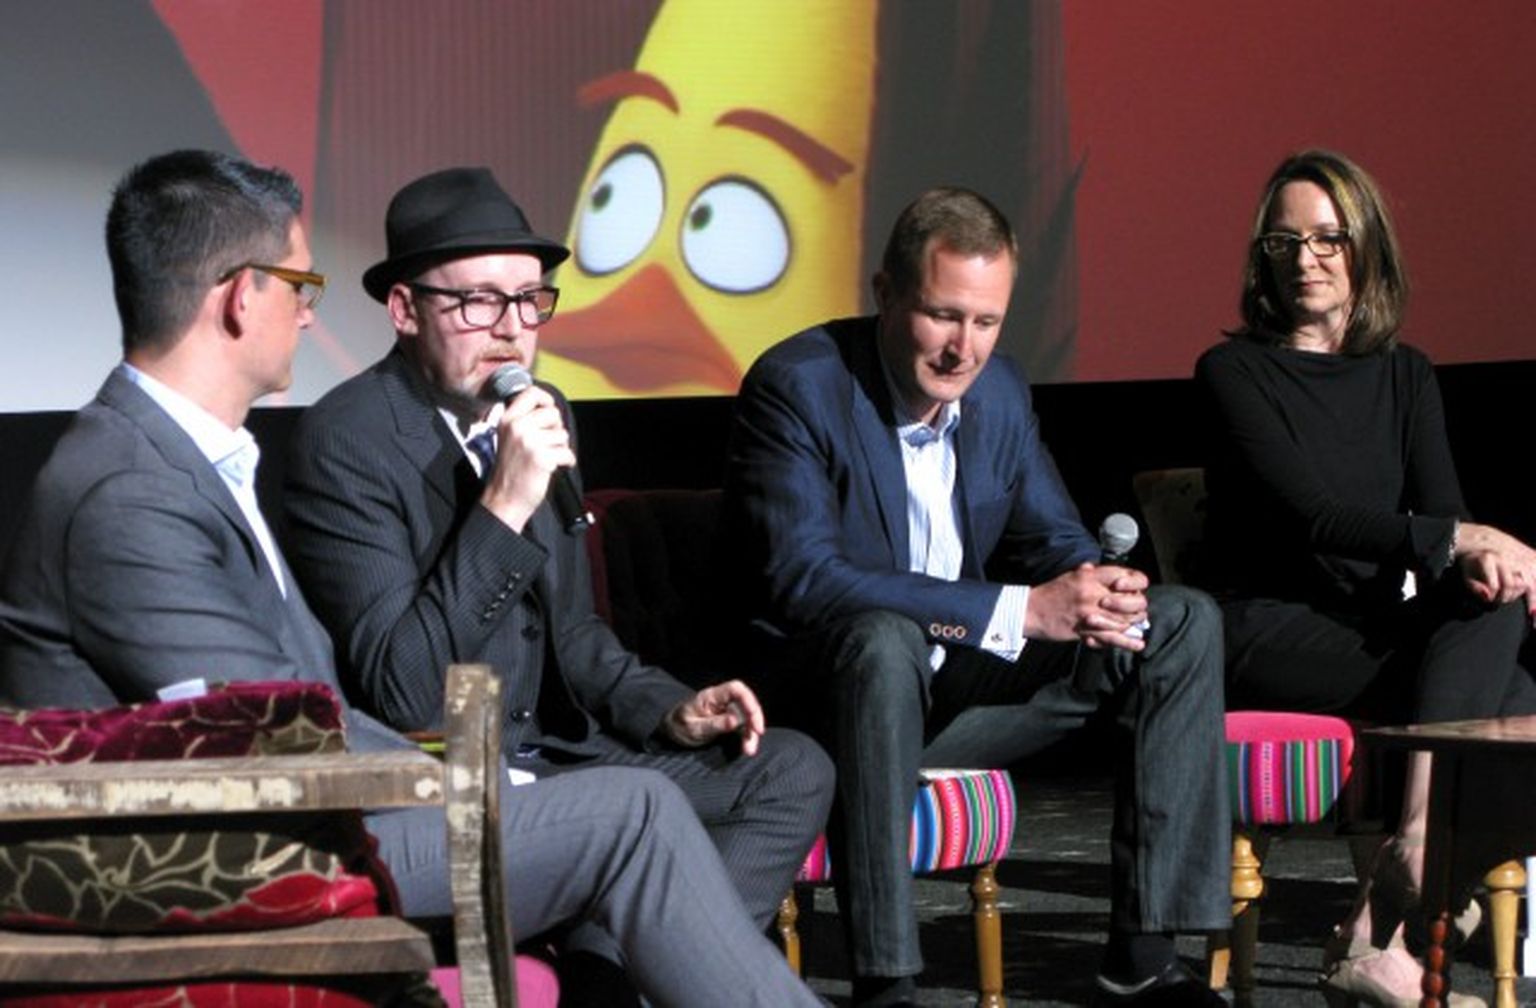 (no kreisās) Animācijas filmas «Dusmīgie putni. Filma» ("Angry Birds Movie") veidotāji - Klejs Keitiss (Clay Katis) un Fergals Reilijs (Fergal Reilly), kā arī producenti